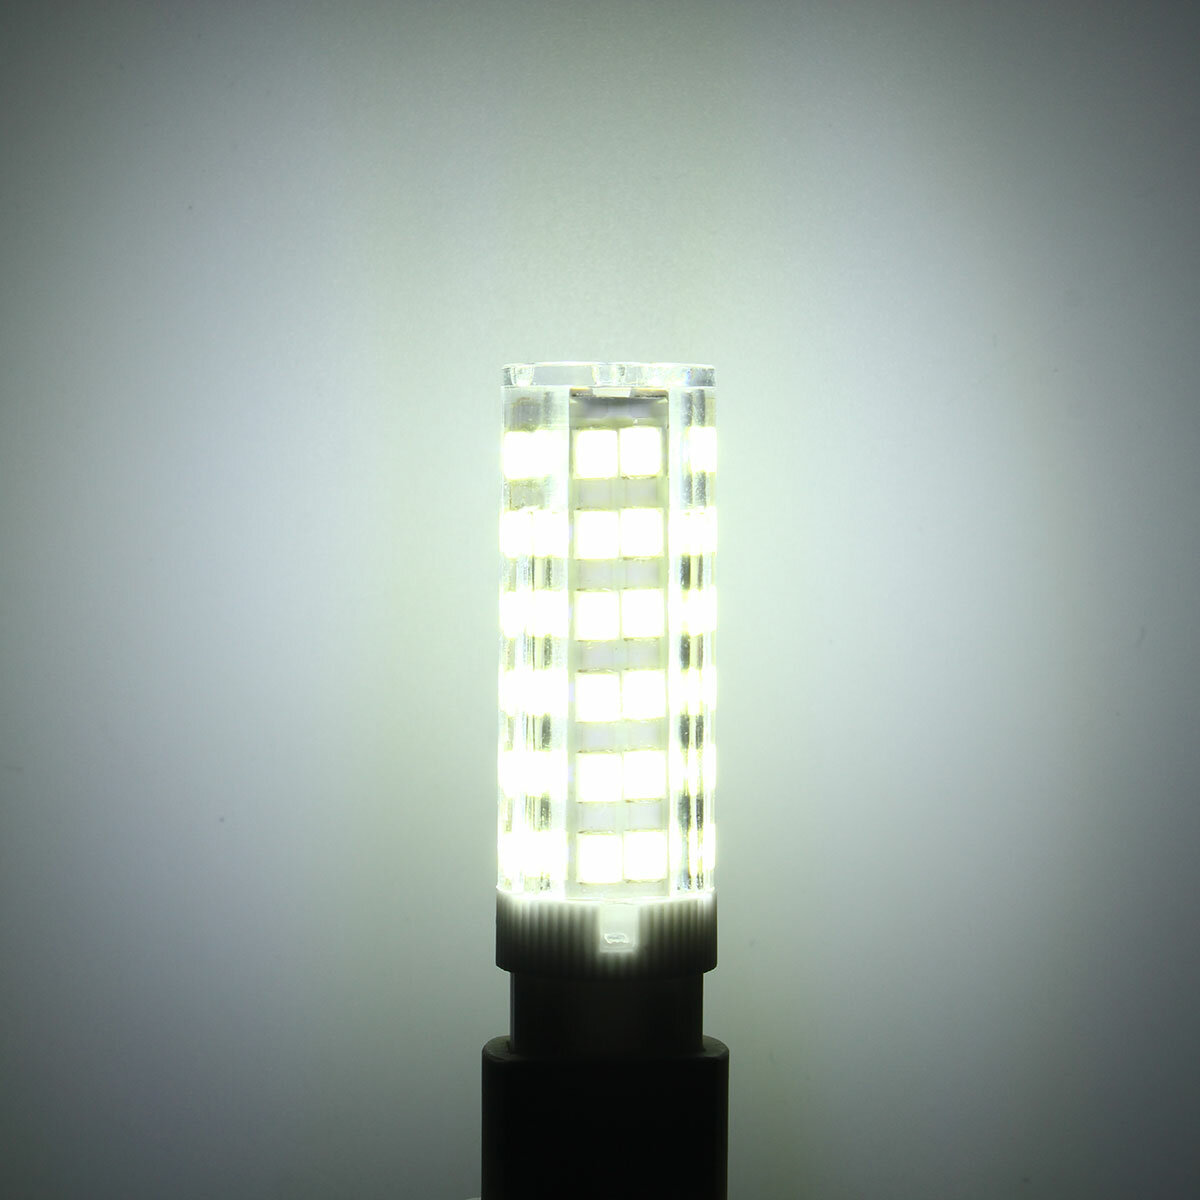 220V E14 G9 2835 76SMD LED Light Bulbs Dimmable Natural White/White Lamp Spot Light